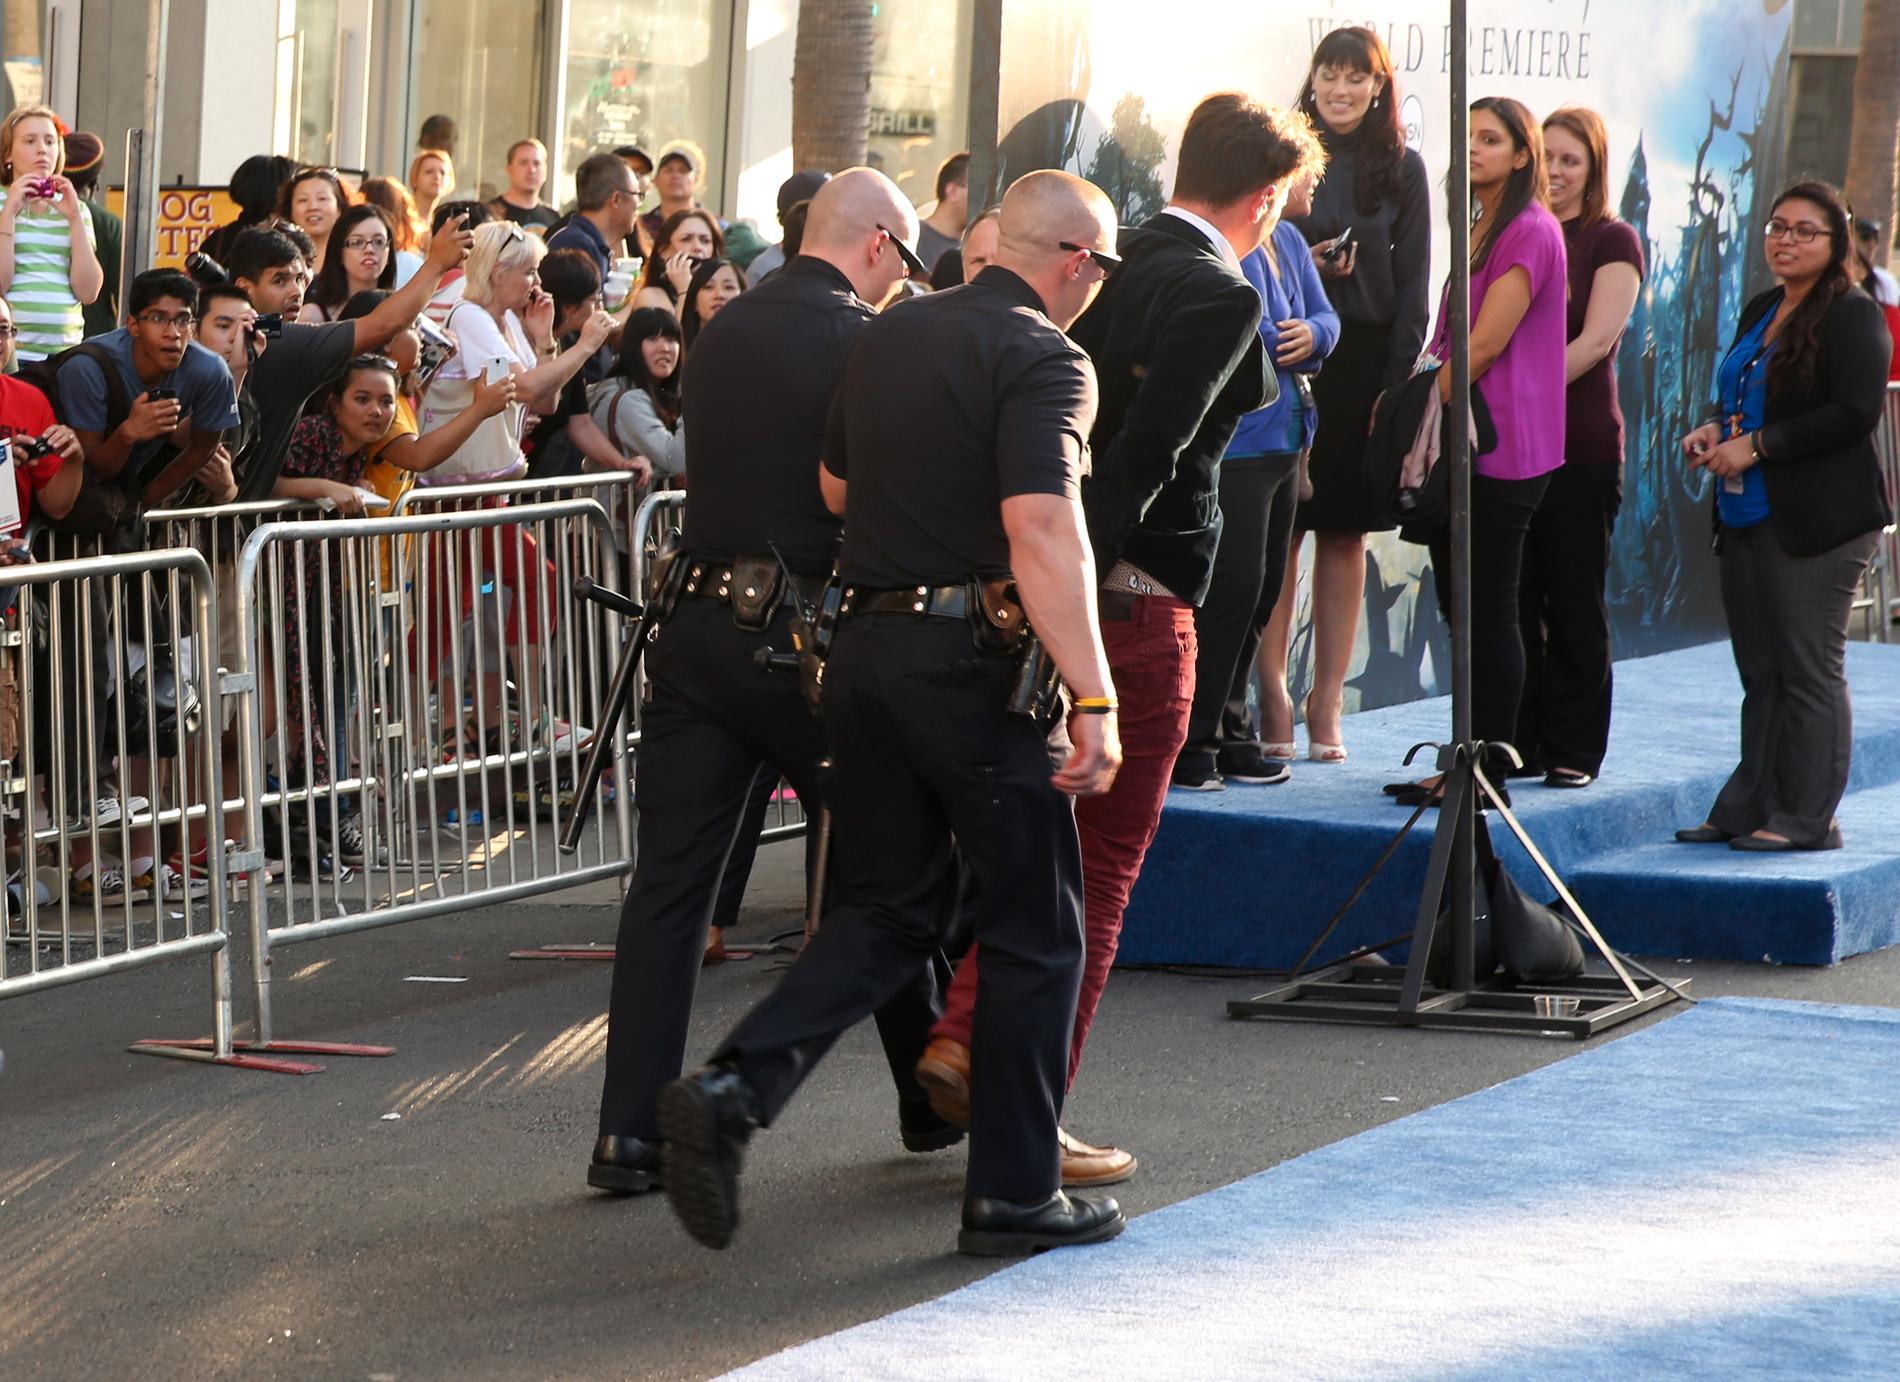 Vitalii Sediuk tas omhand av polis efter att ha attackerat  Brad Pitt vid världspremiären av "Maleficent" i Los Angeles 2014.